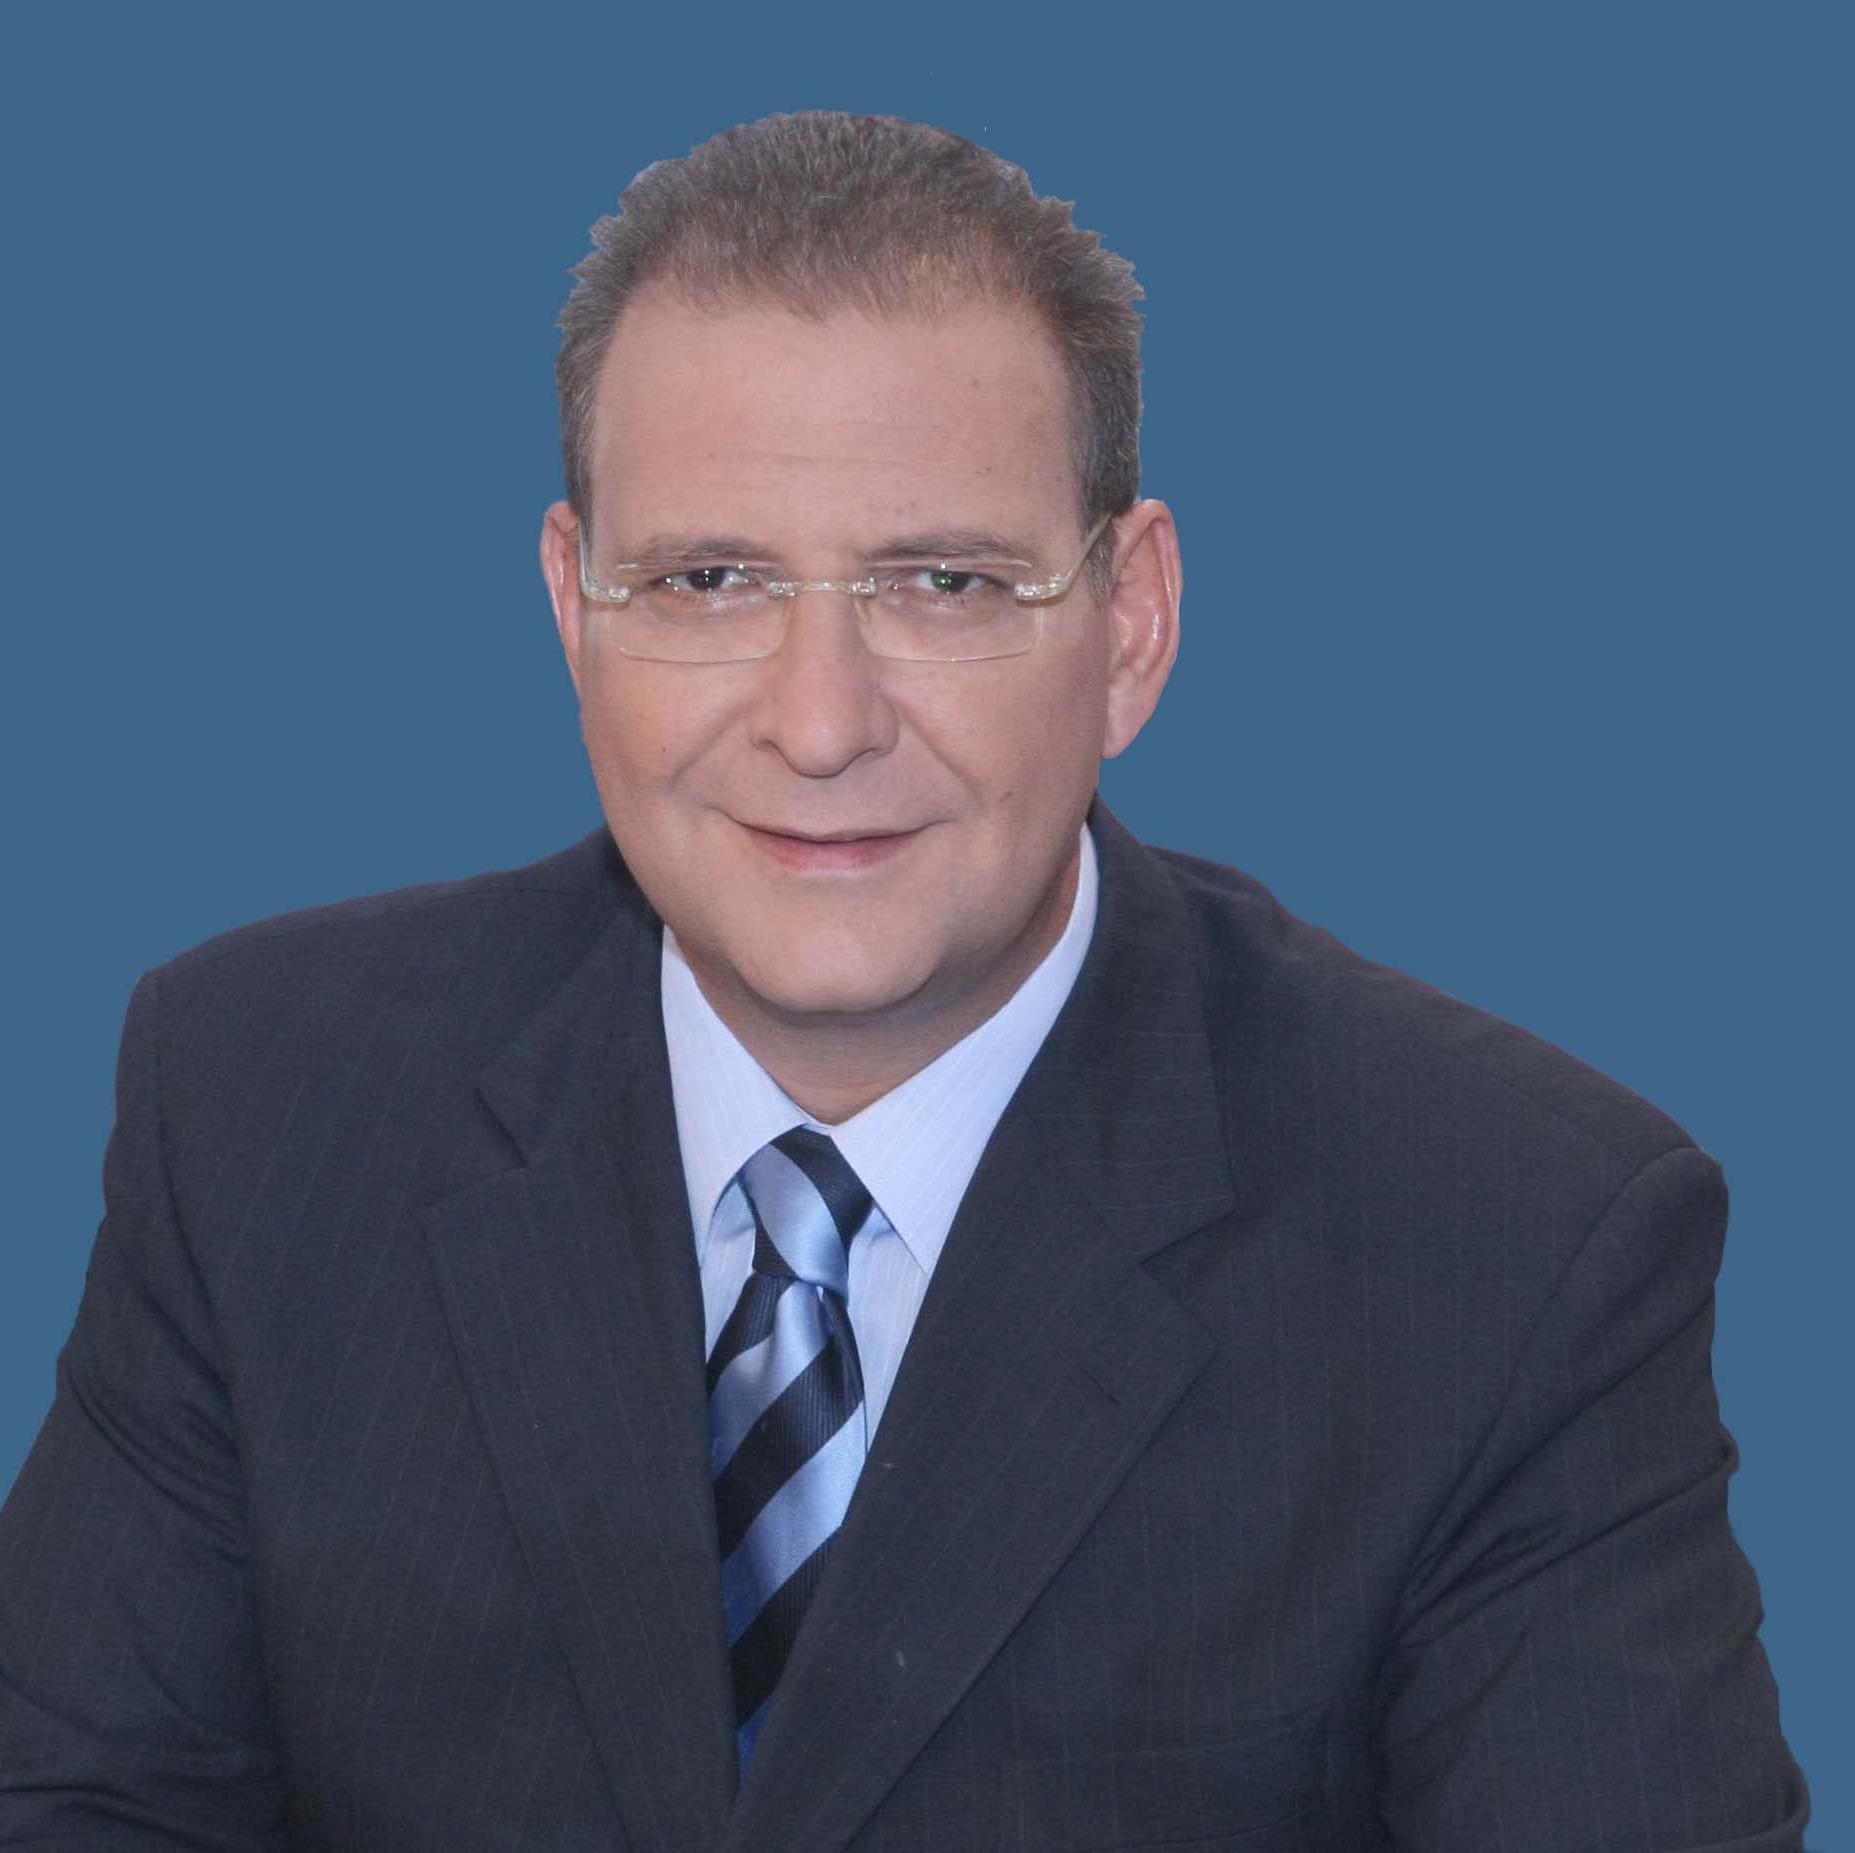 Διευθυντής του Γραφείου Τύπου του Προέδρου της Κυπριακής Δημοκρατίας / Director of the press office of the President of the Cyprus Republic.